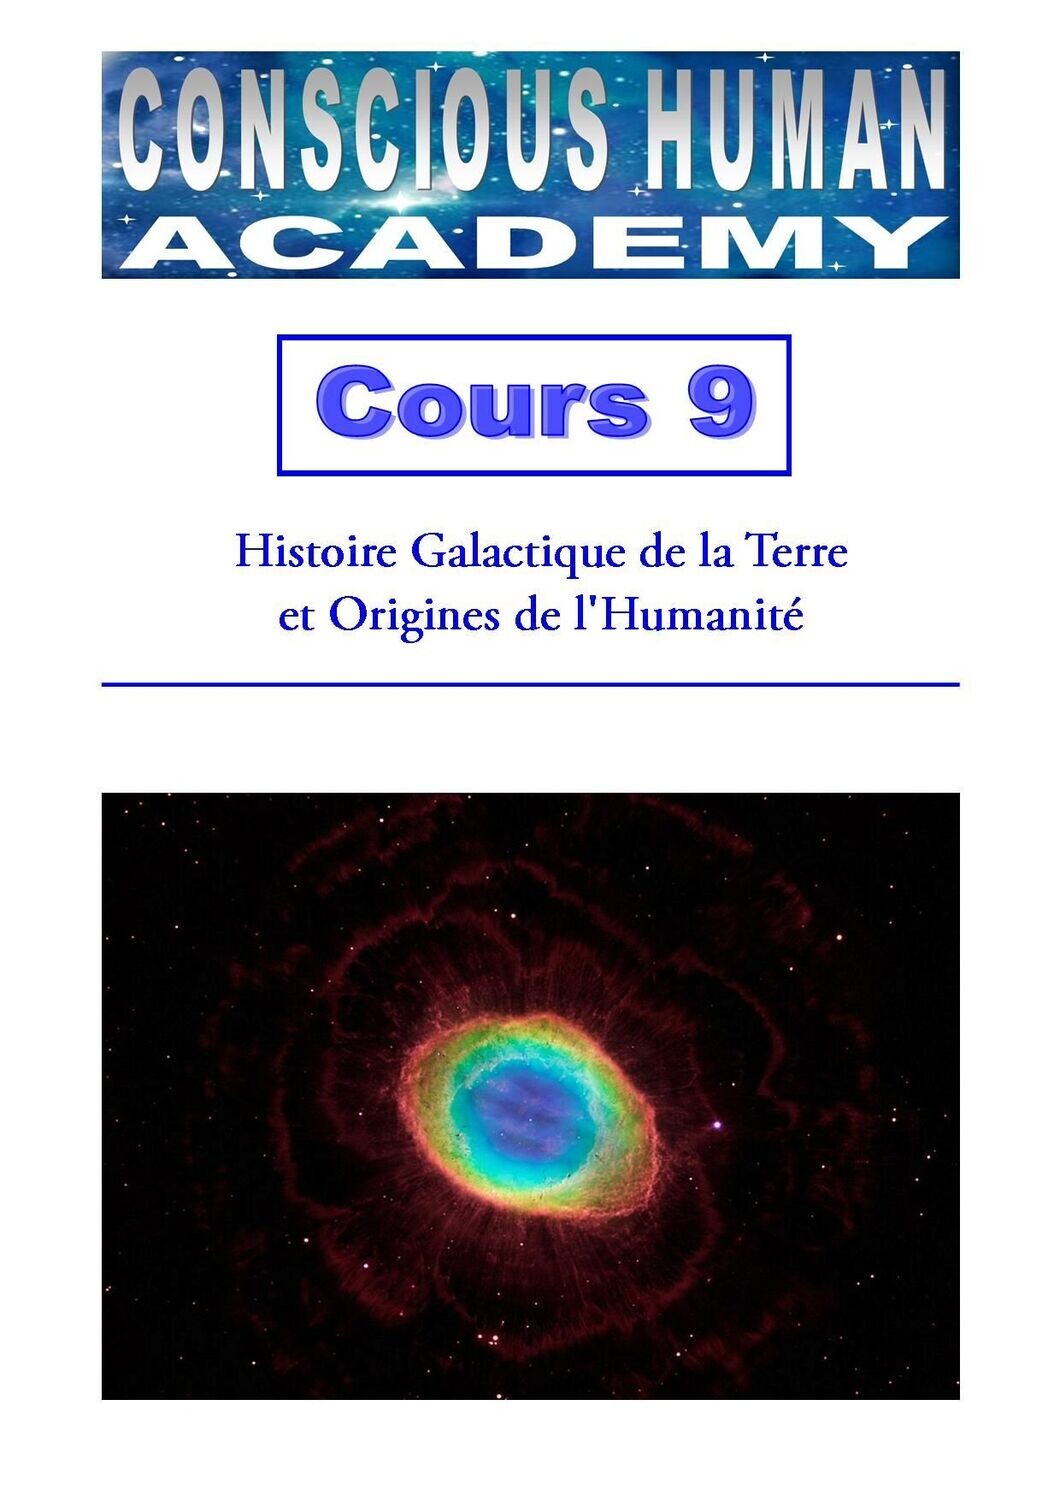 Cours 9 - Histoire Galactique de la Terre et Origines de l'Humanité